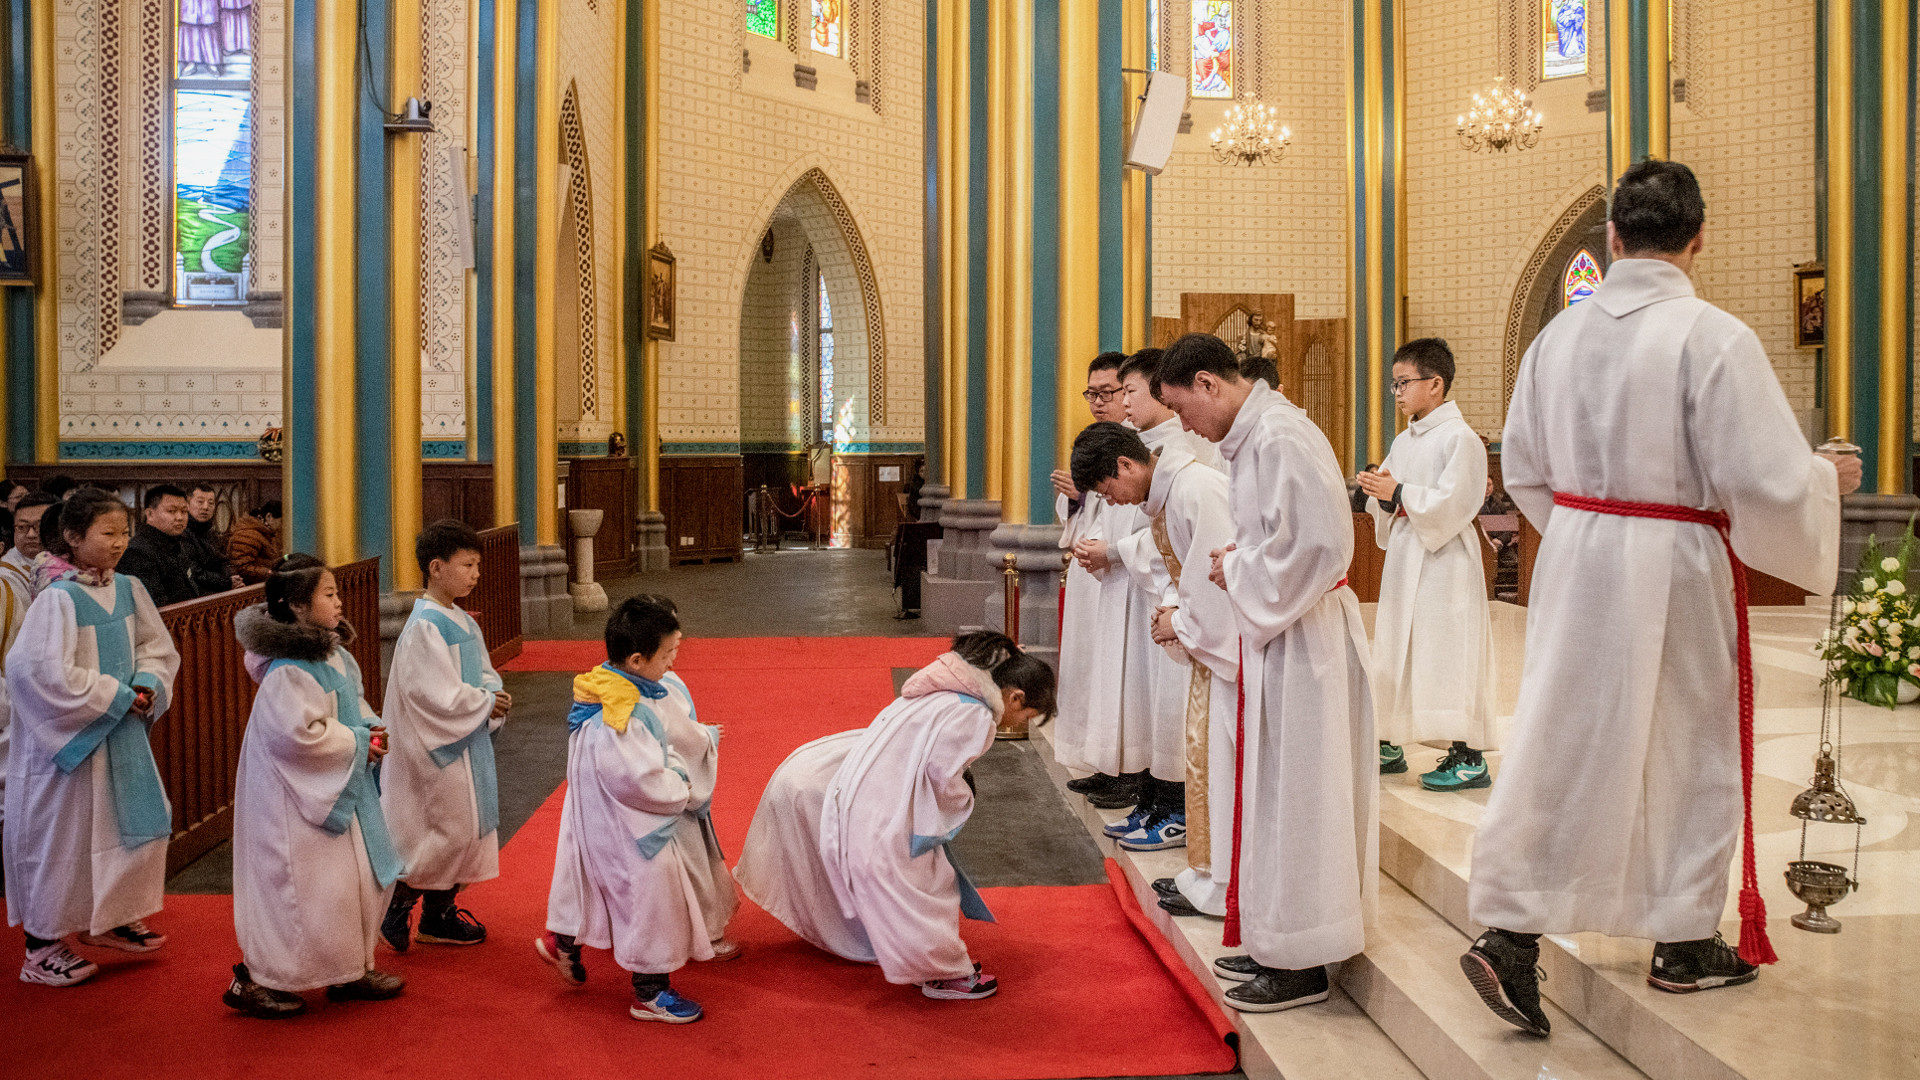 Kinder verbeugen sich vor dem Priester während einer Messe  in Peking.